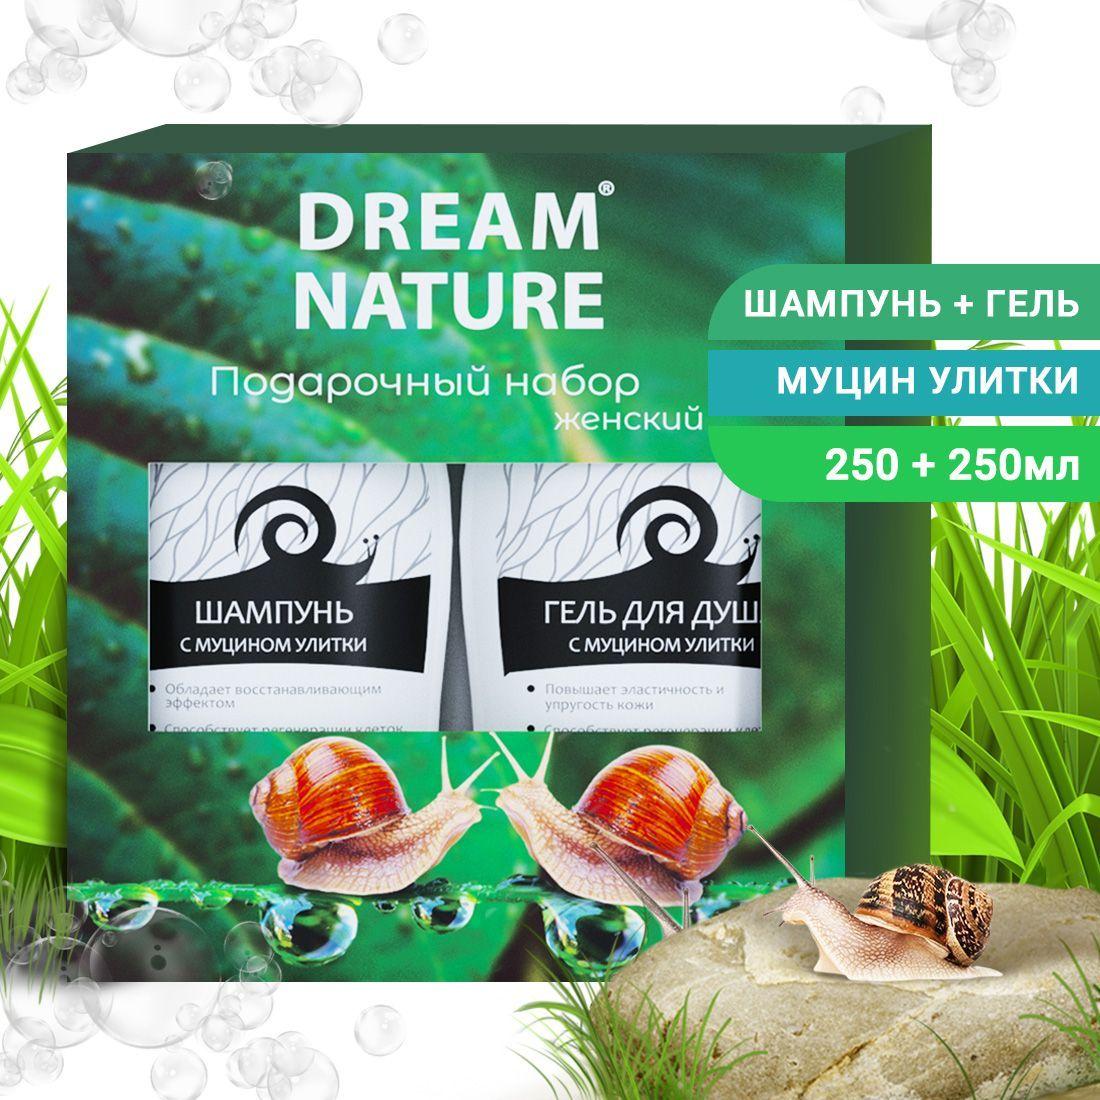 DREAM NATURE | Подарочный набор для женщин Dream Nature 2шт по 250мл Шампунь и гель для душа с муцином улитки